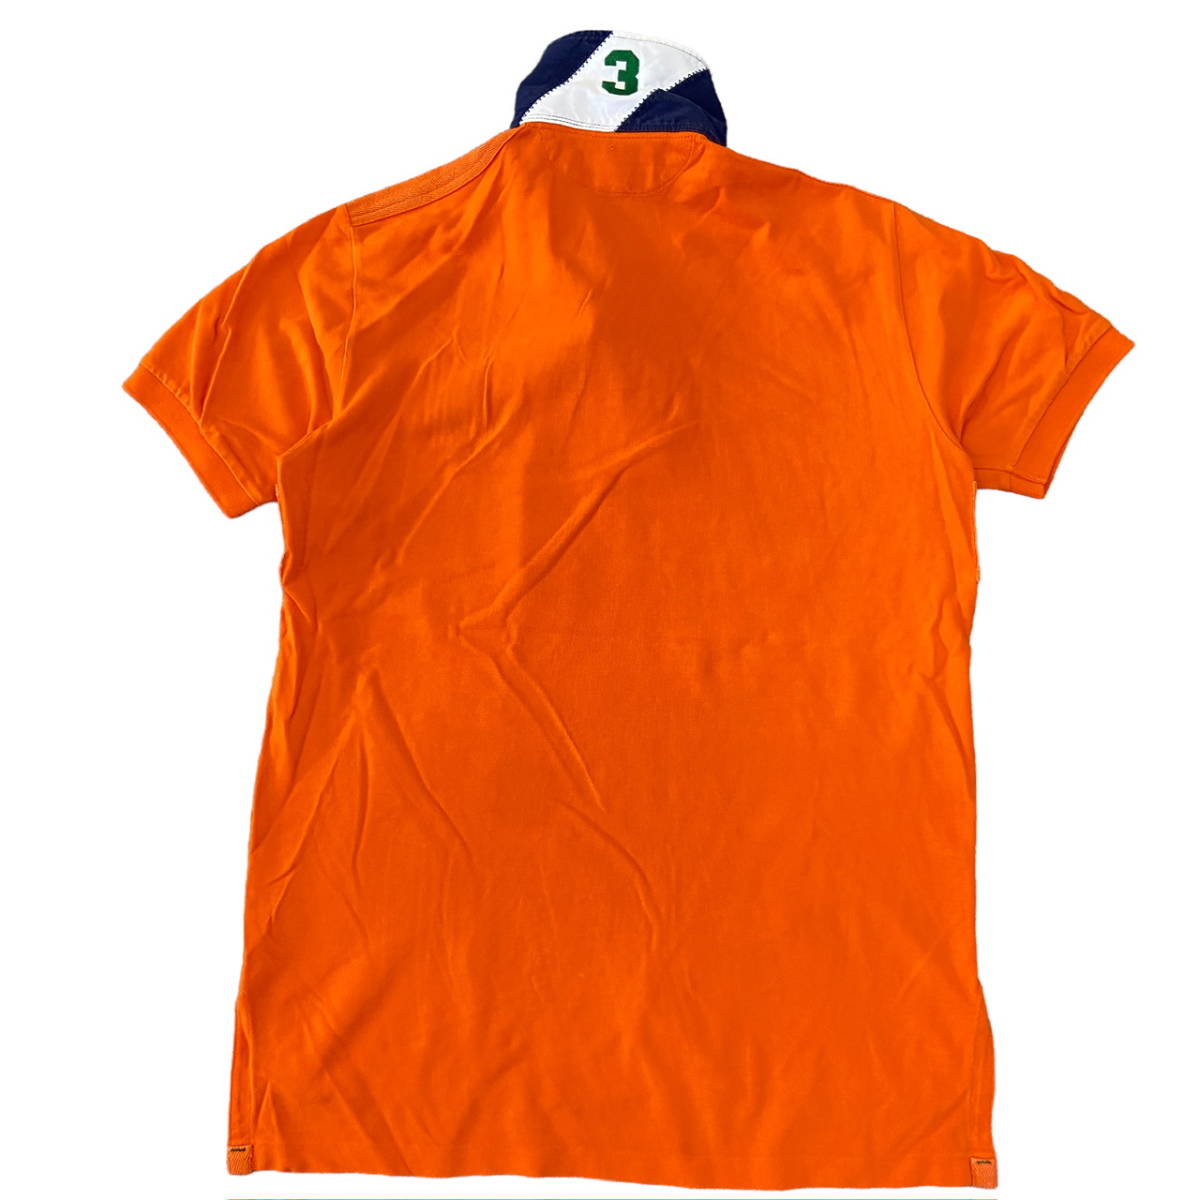 90s Polo Ralph Lauren ポロシャツ M オレンジ ビッグ ポニー ロゴ 刺繍 袖 ナンバリング 3 半袖 ラガーシャツ ポロ ラルフローレン_画像2